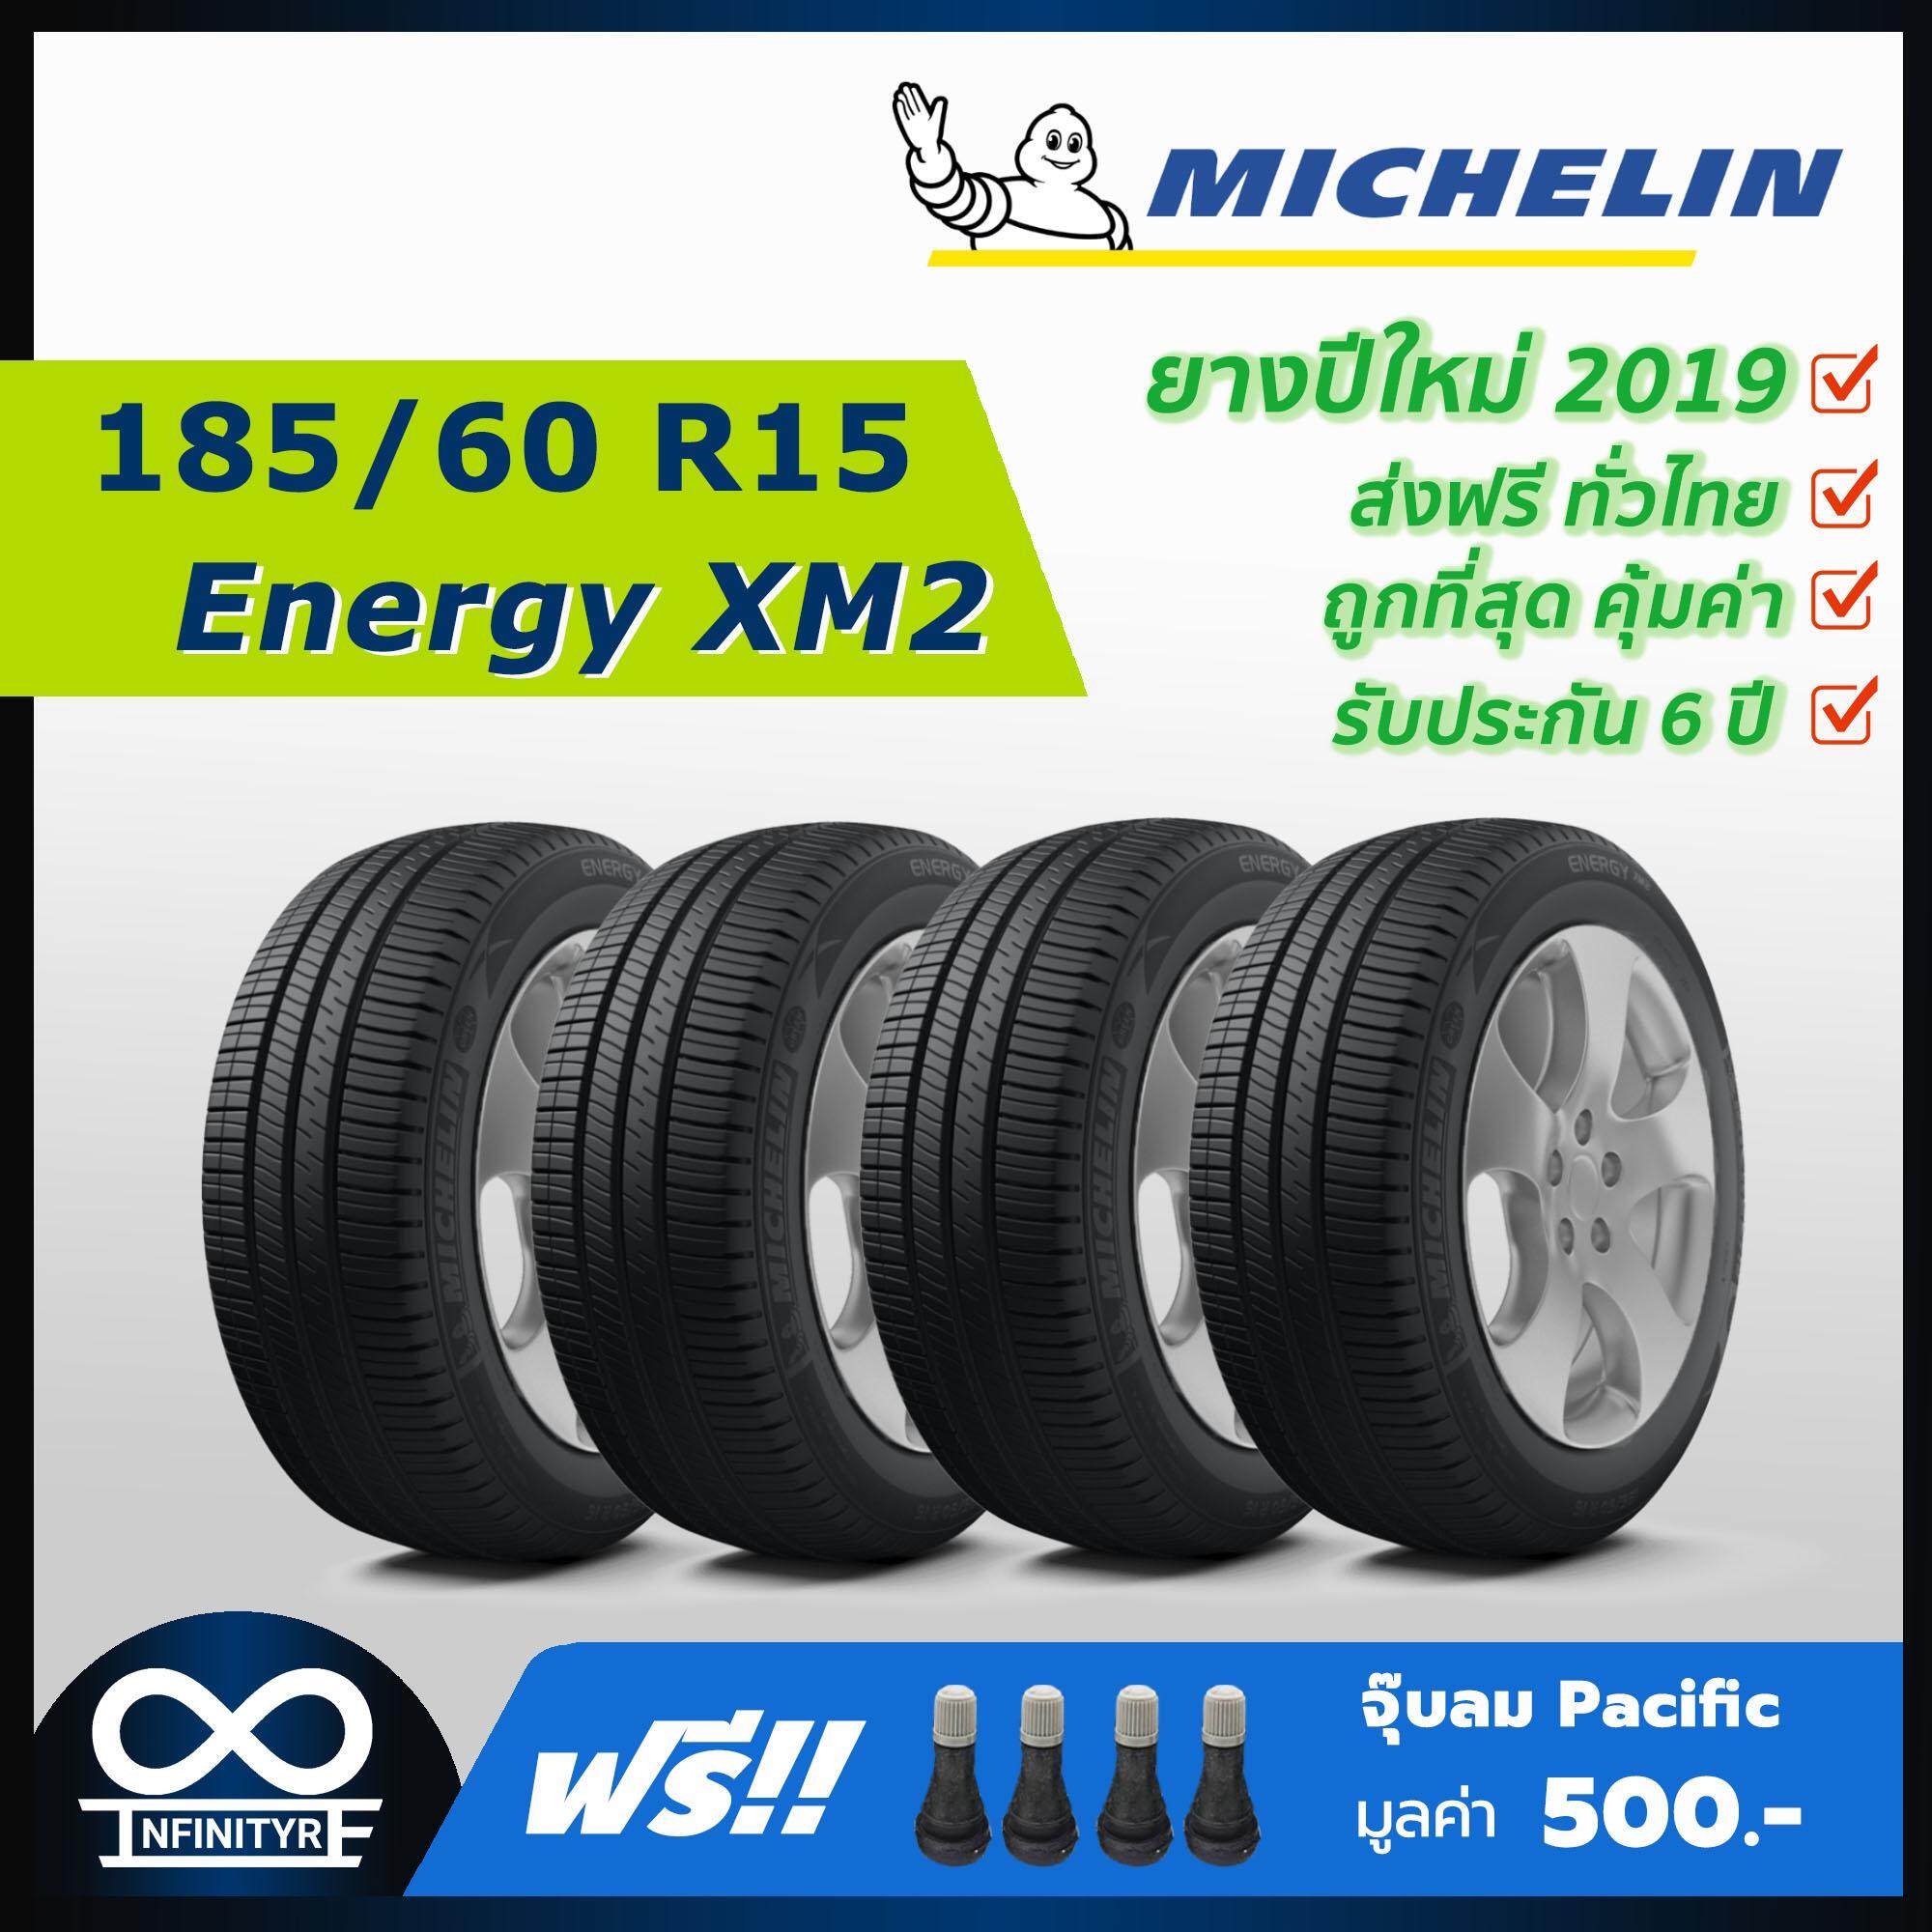 ประกันภัย รถยนต์ 3 พลัส ราคา ถูก เพชรบุรี 185/60R15 Michelin รุ่น Energy XM2 (ปี2019) 4เส้น (ฟรี! จุ๊บลมPacific เกรดพรีเมี่ยม)